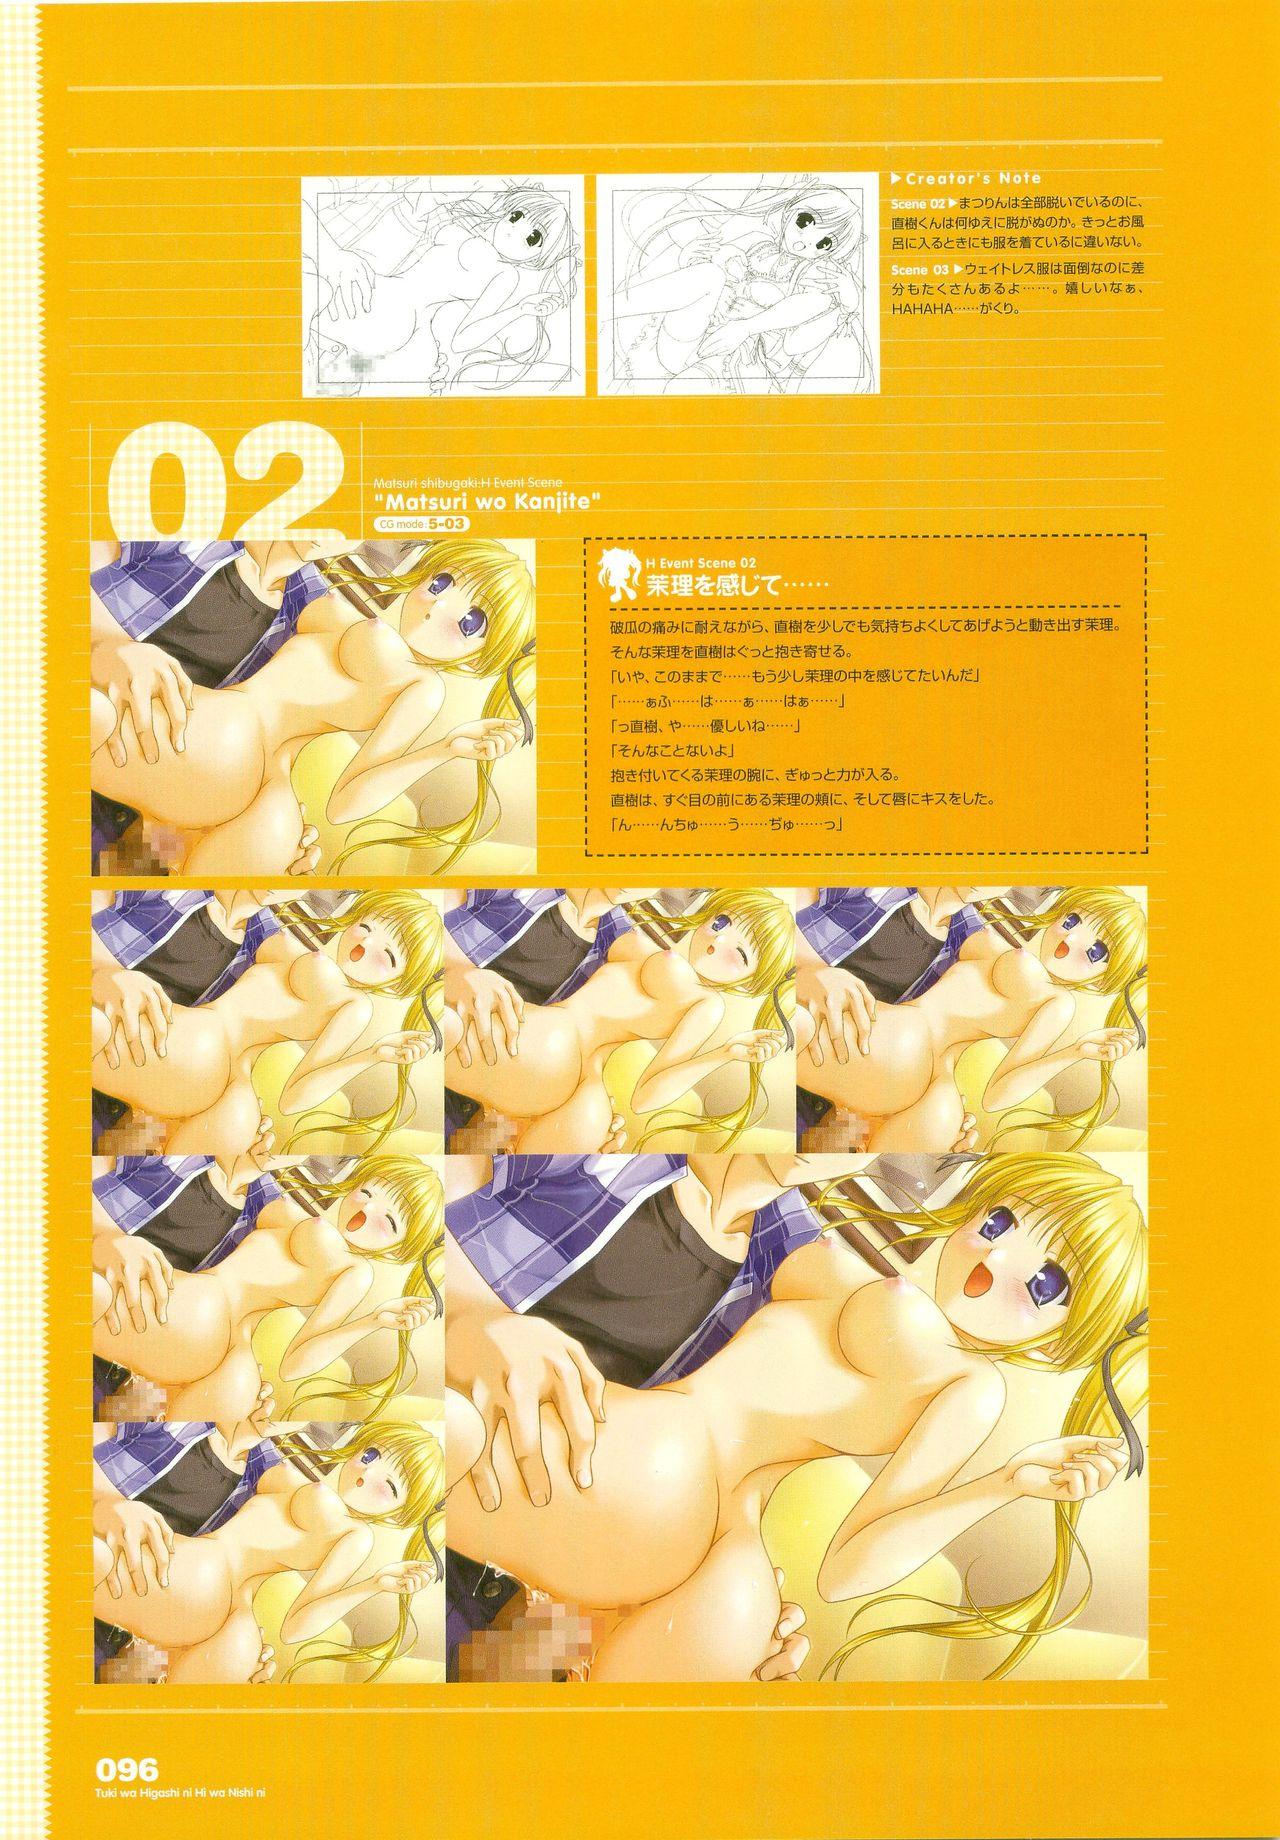 Tsuki wa Higashi ni Hi wa Nishi ni - Operation Sanctuary - Visual Fan Book Shokai Ban 122